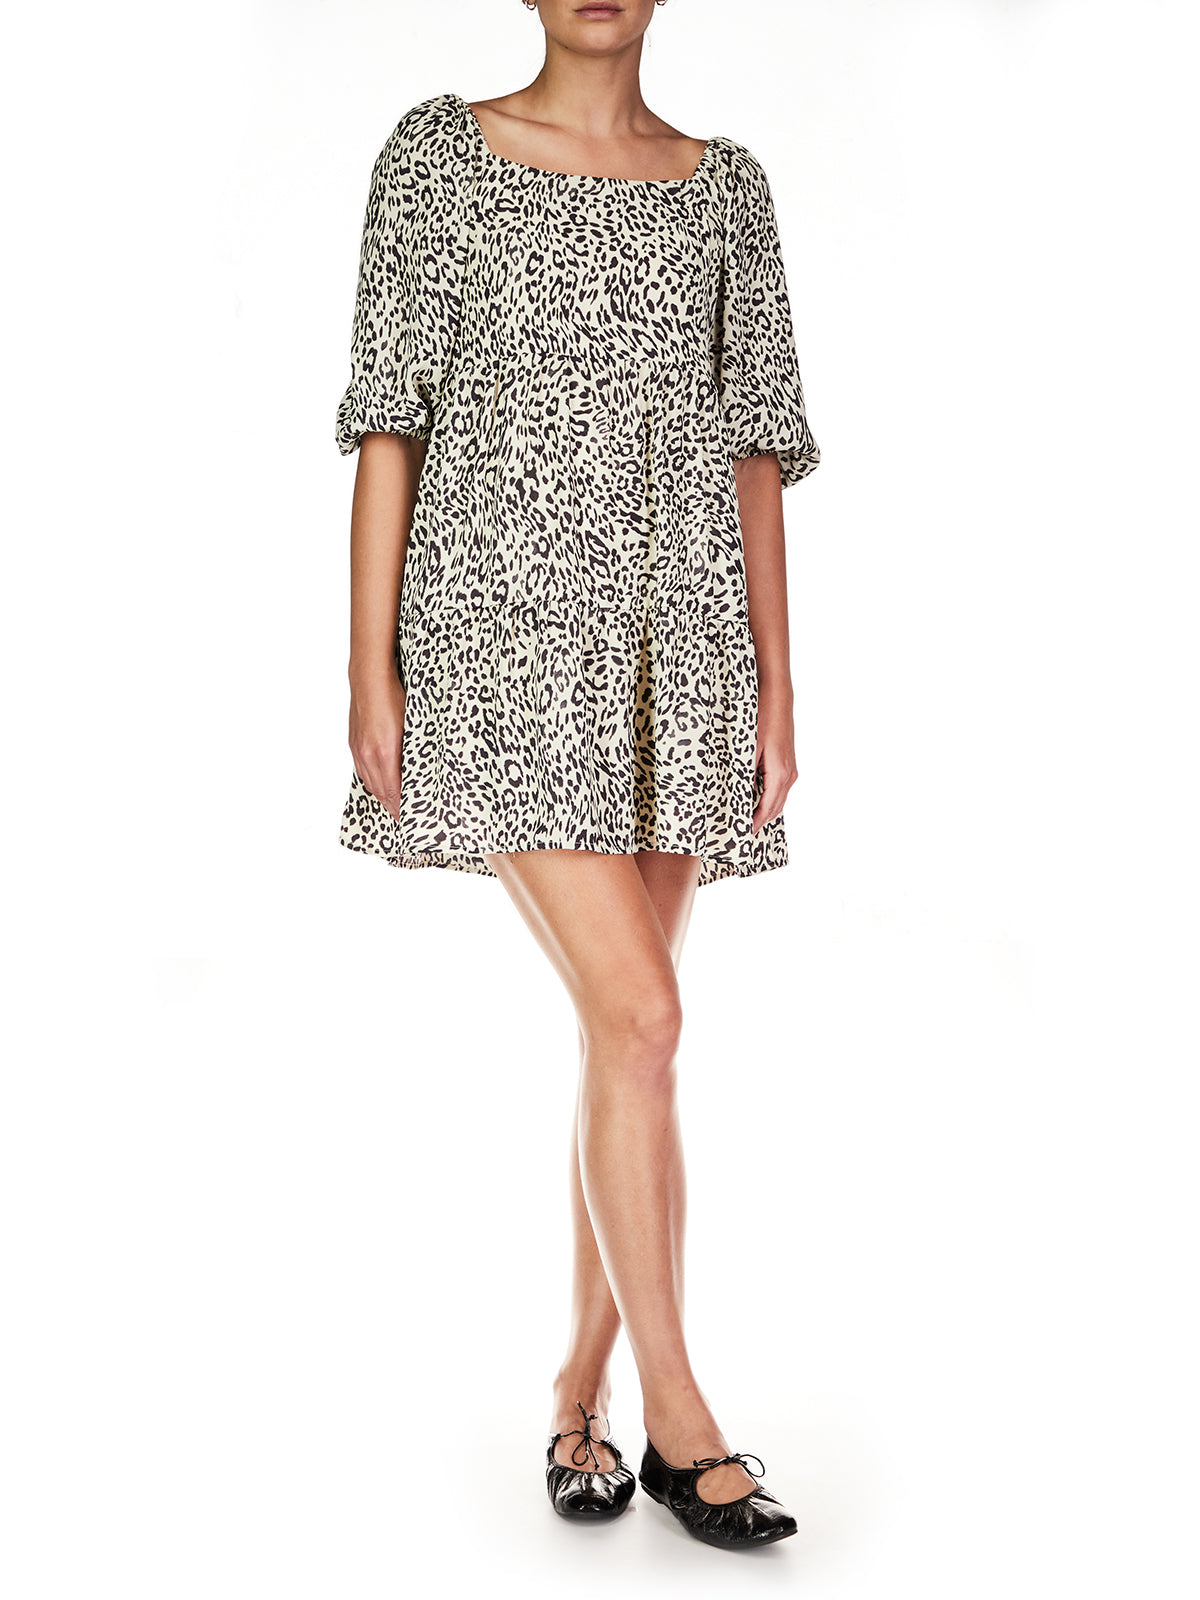 Leopard Print Dress Apex Ethical Boutique